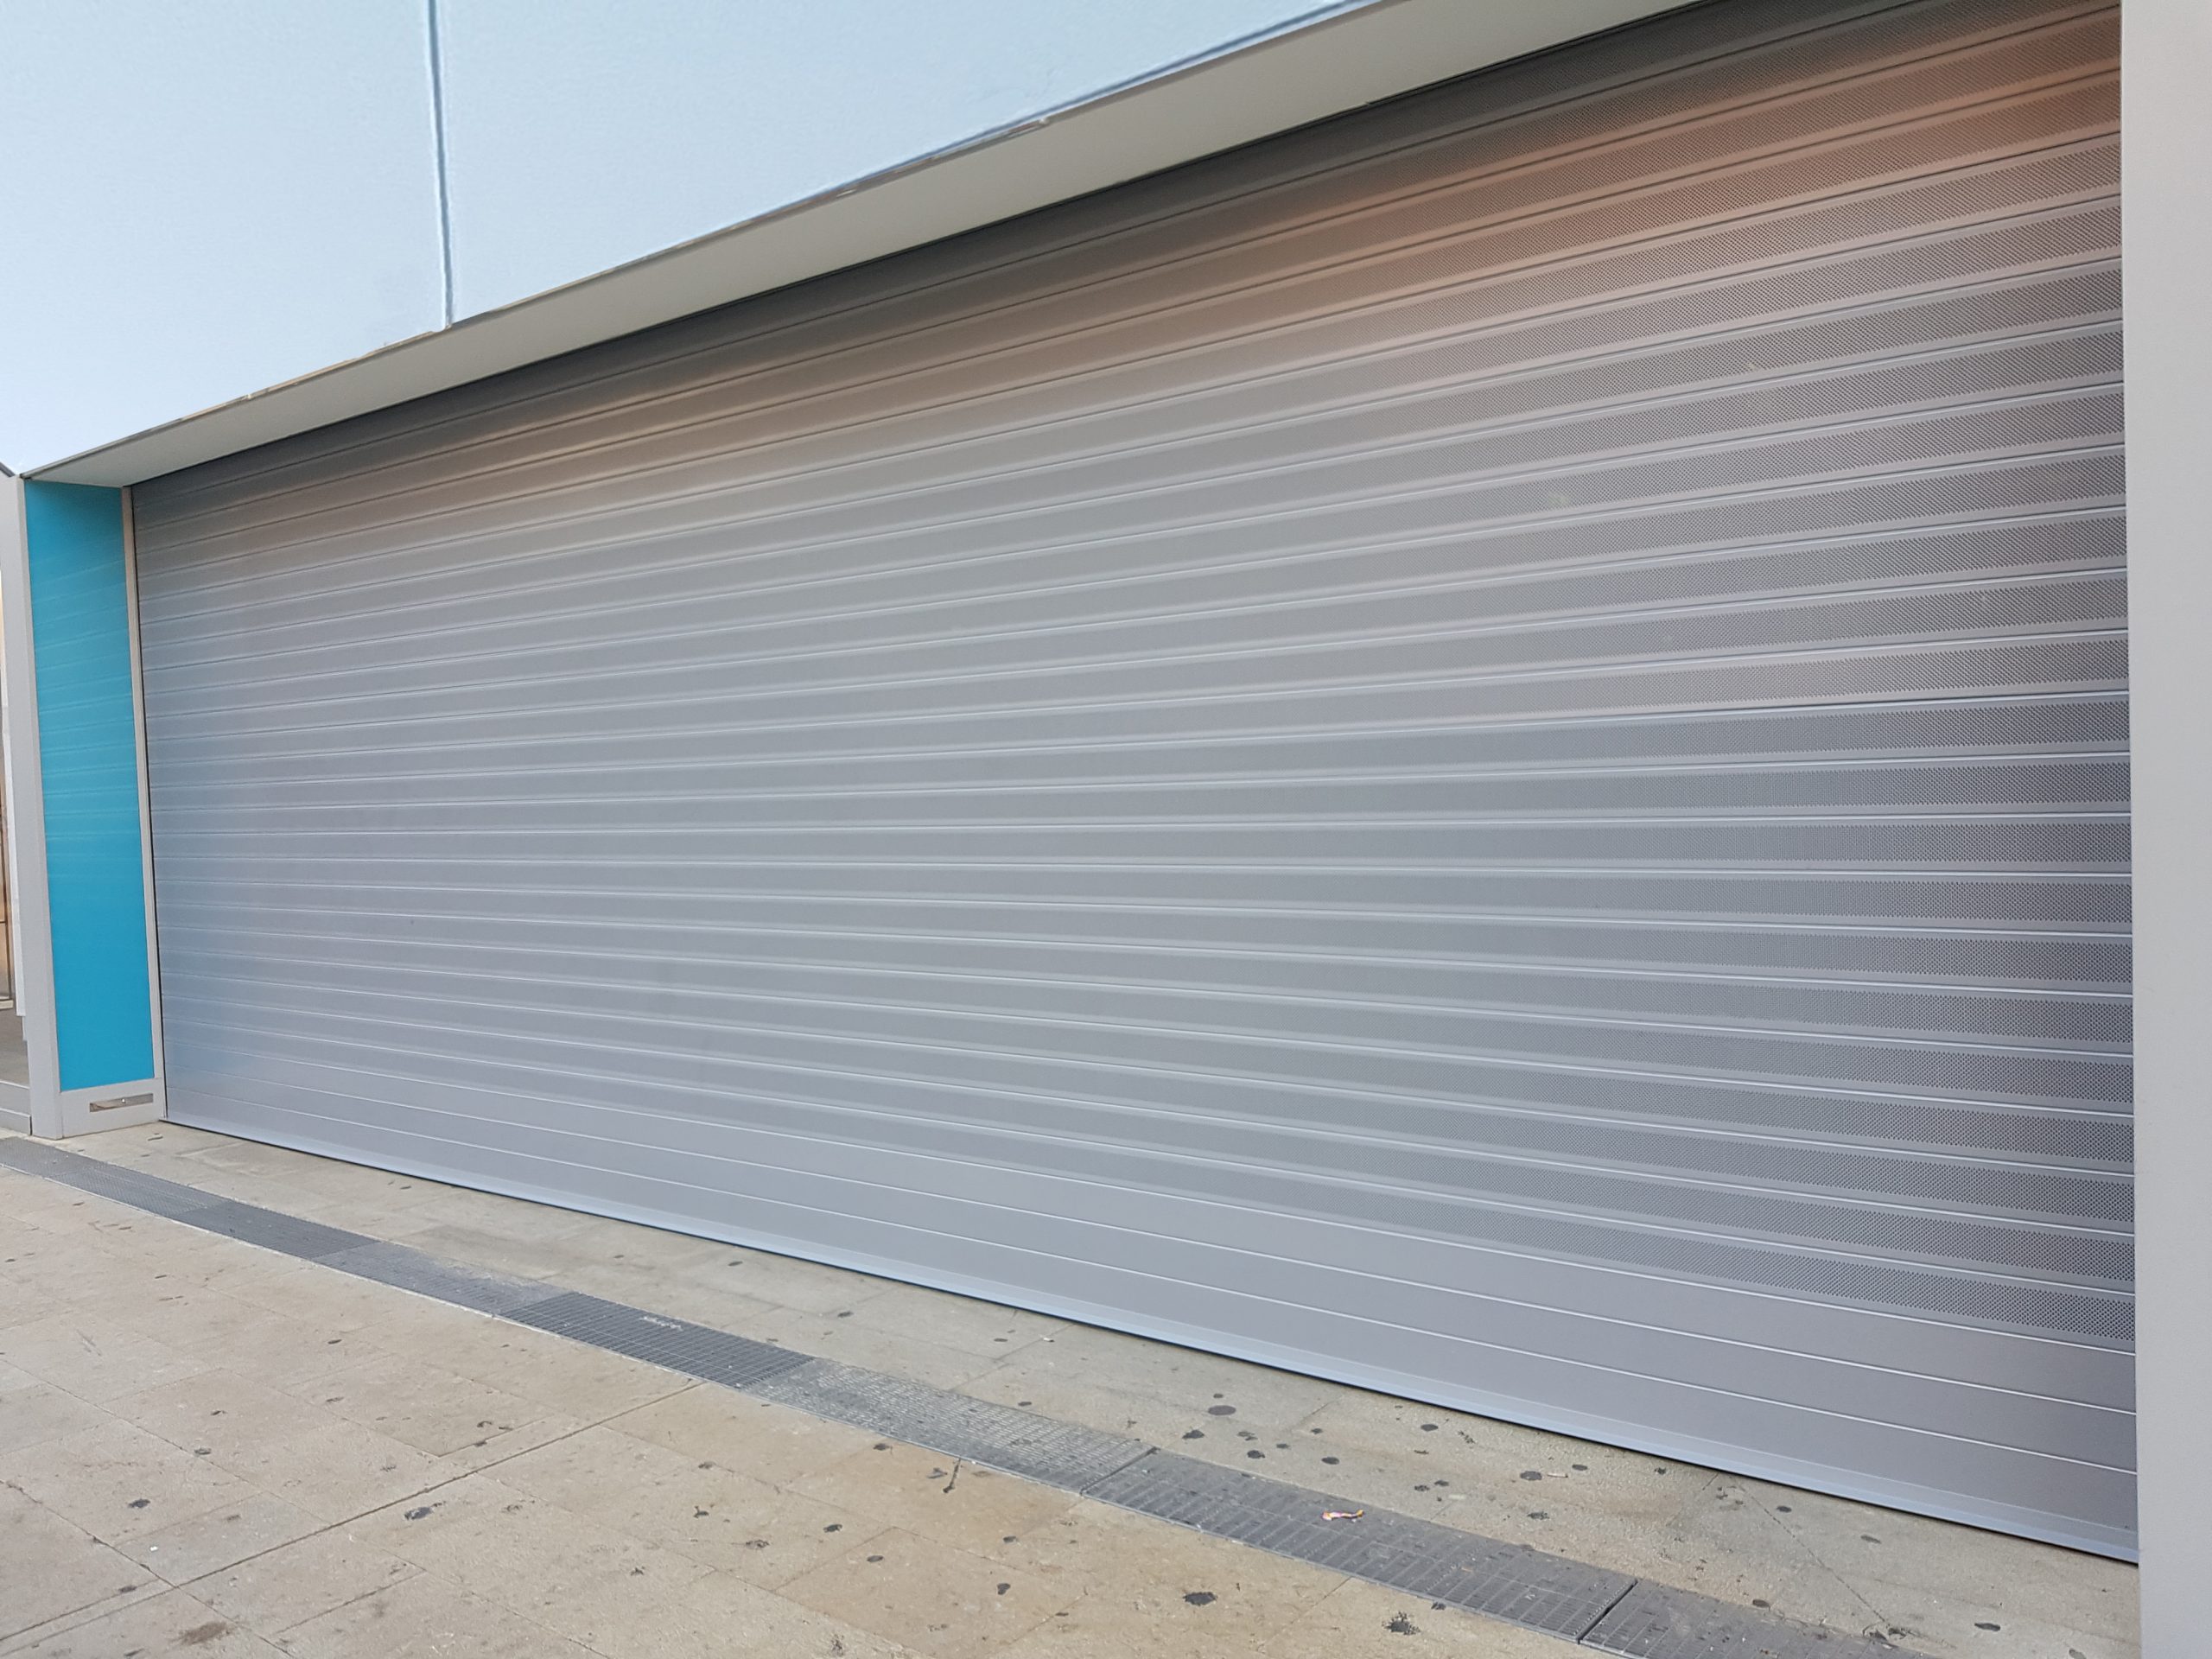 Obligatoriedad y responsabilidades en el Mantenimiento de puertas de garaje, comerciales e industriales